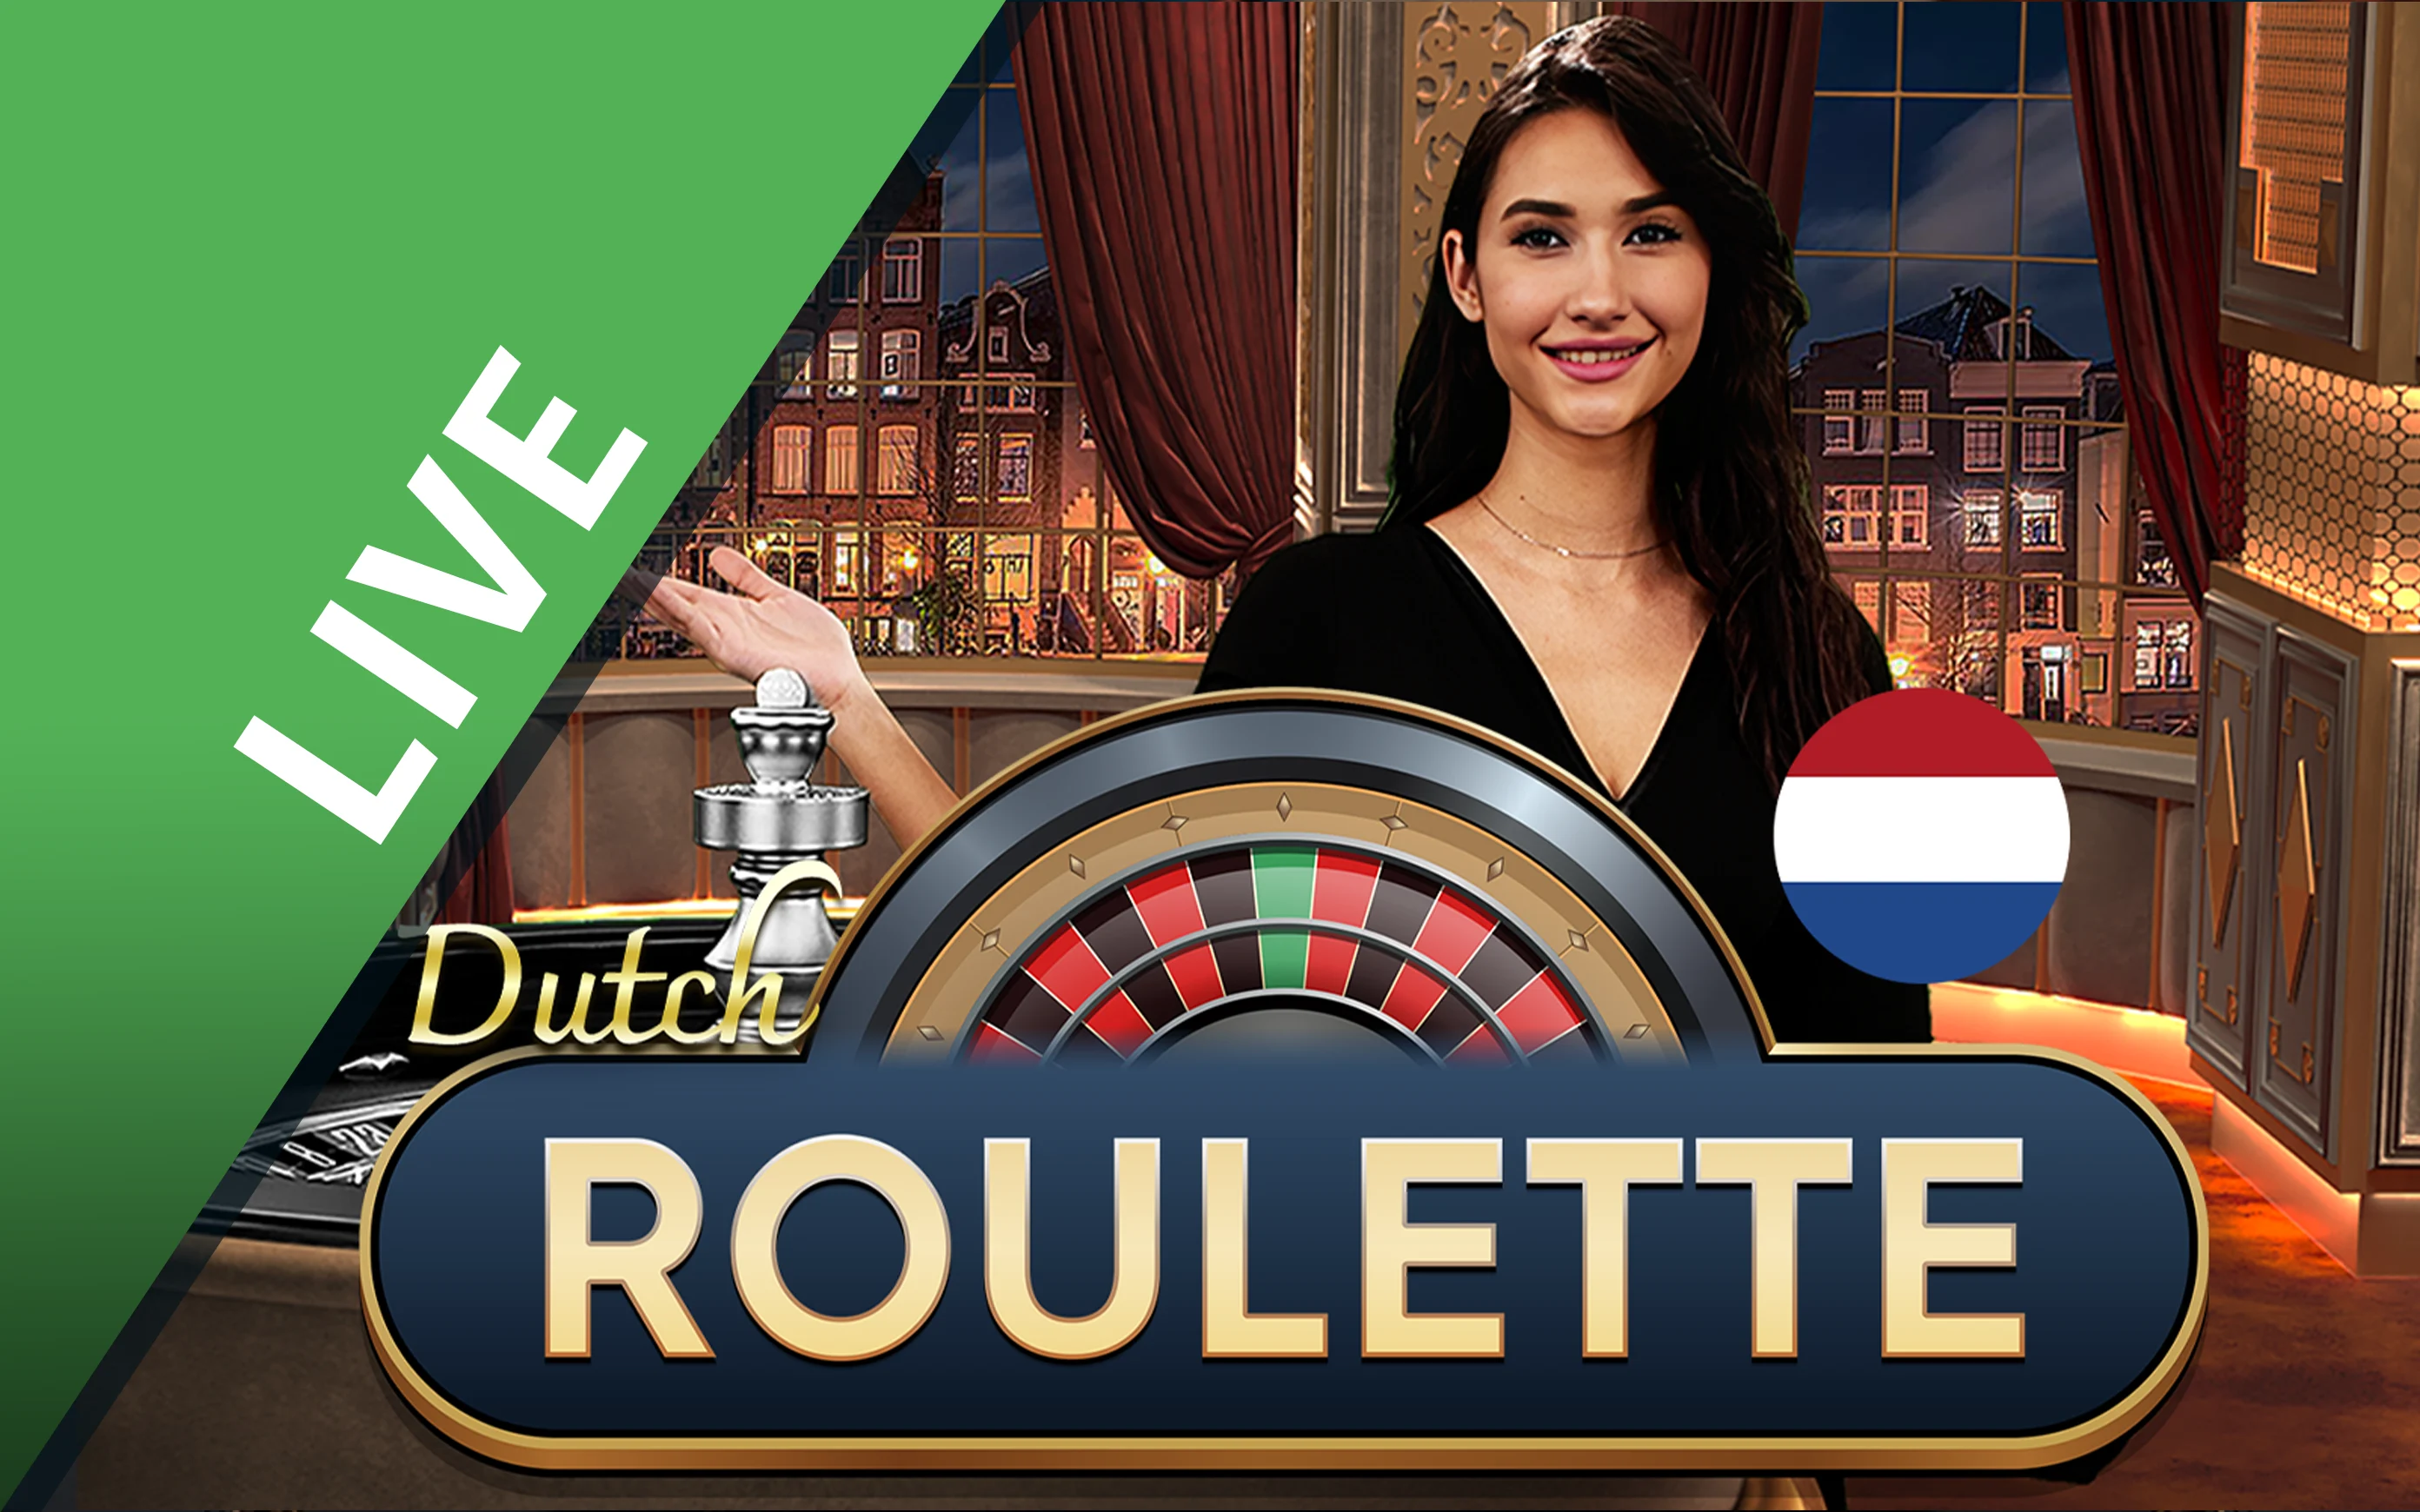 Gioca a Dutch Roulette sul casino online Starcasino.be